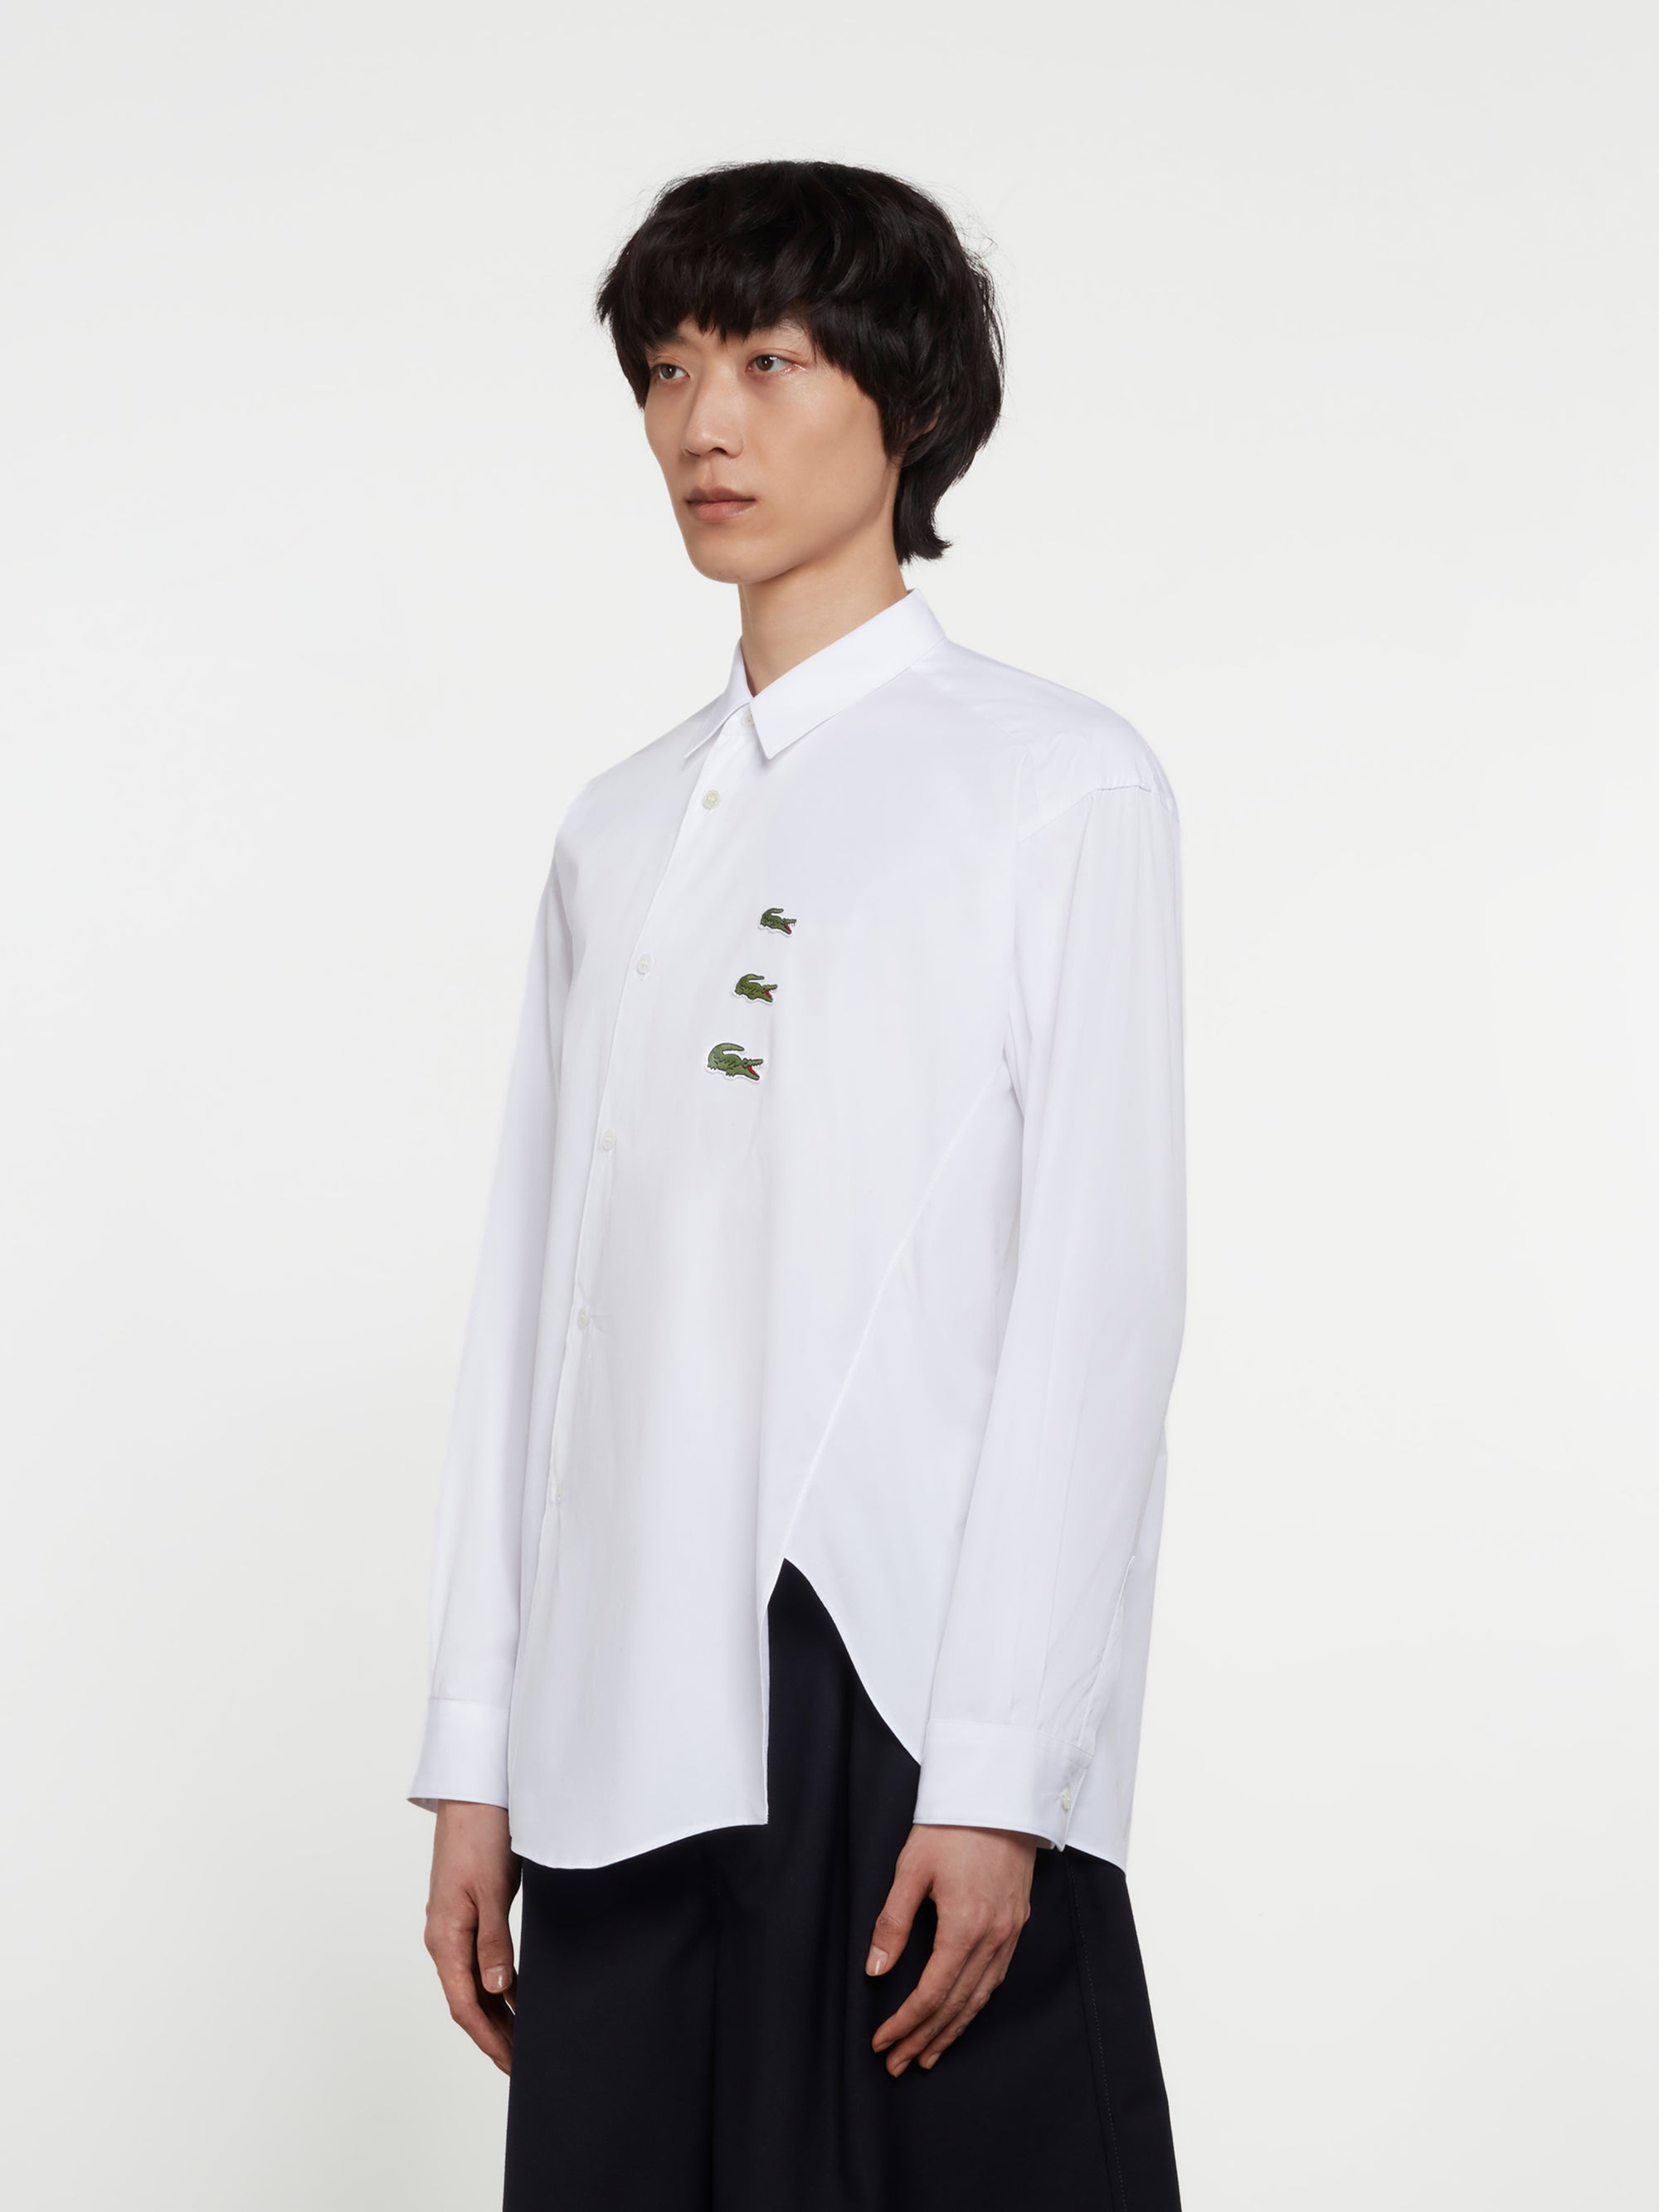 CDG Shirt - Lacoste Men’s Asymmetric Shirt - (White) view 2